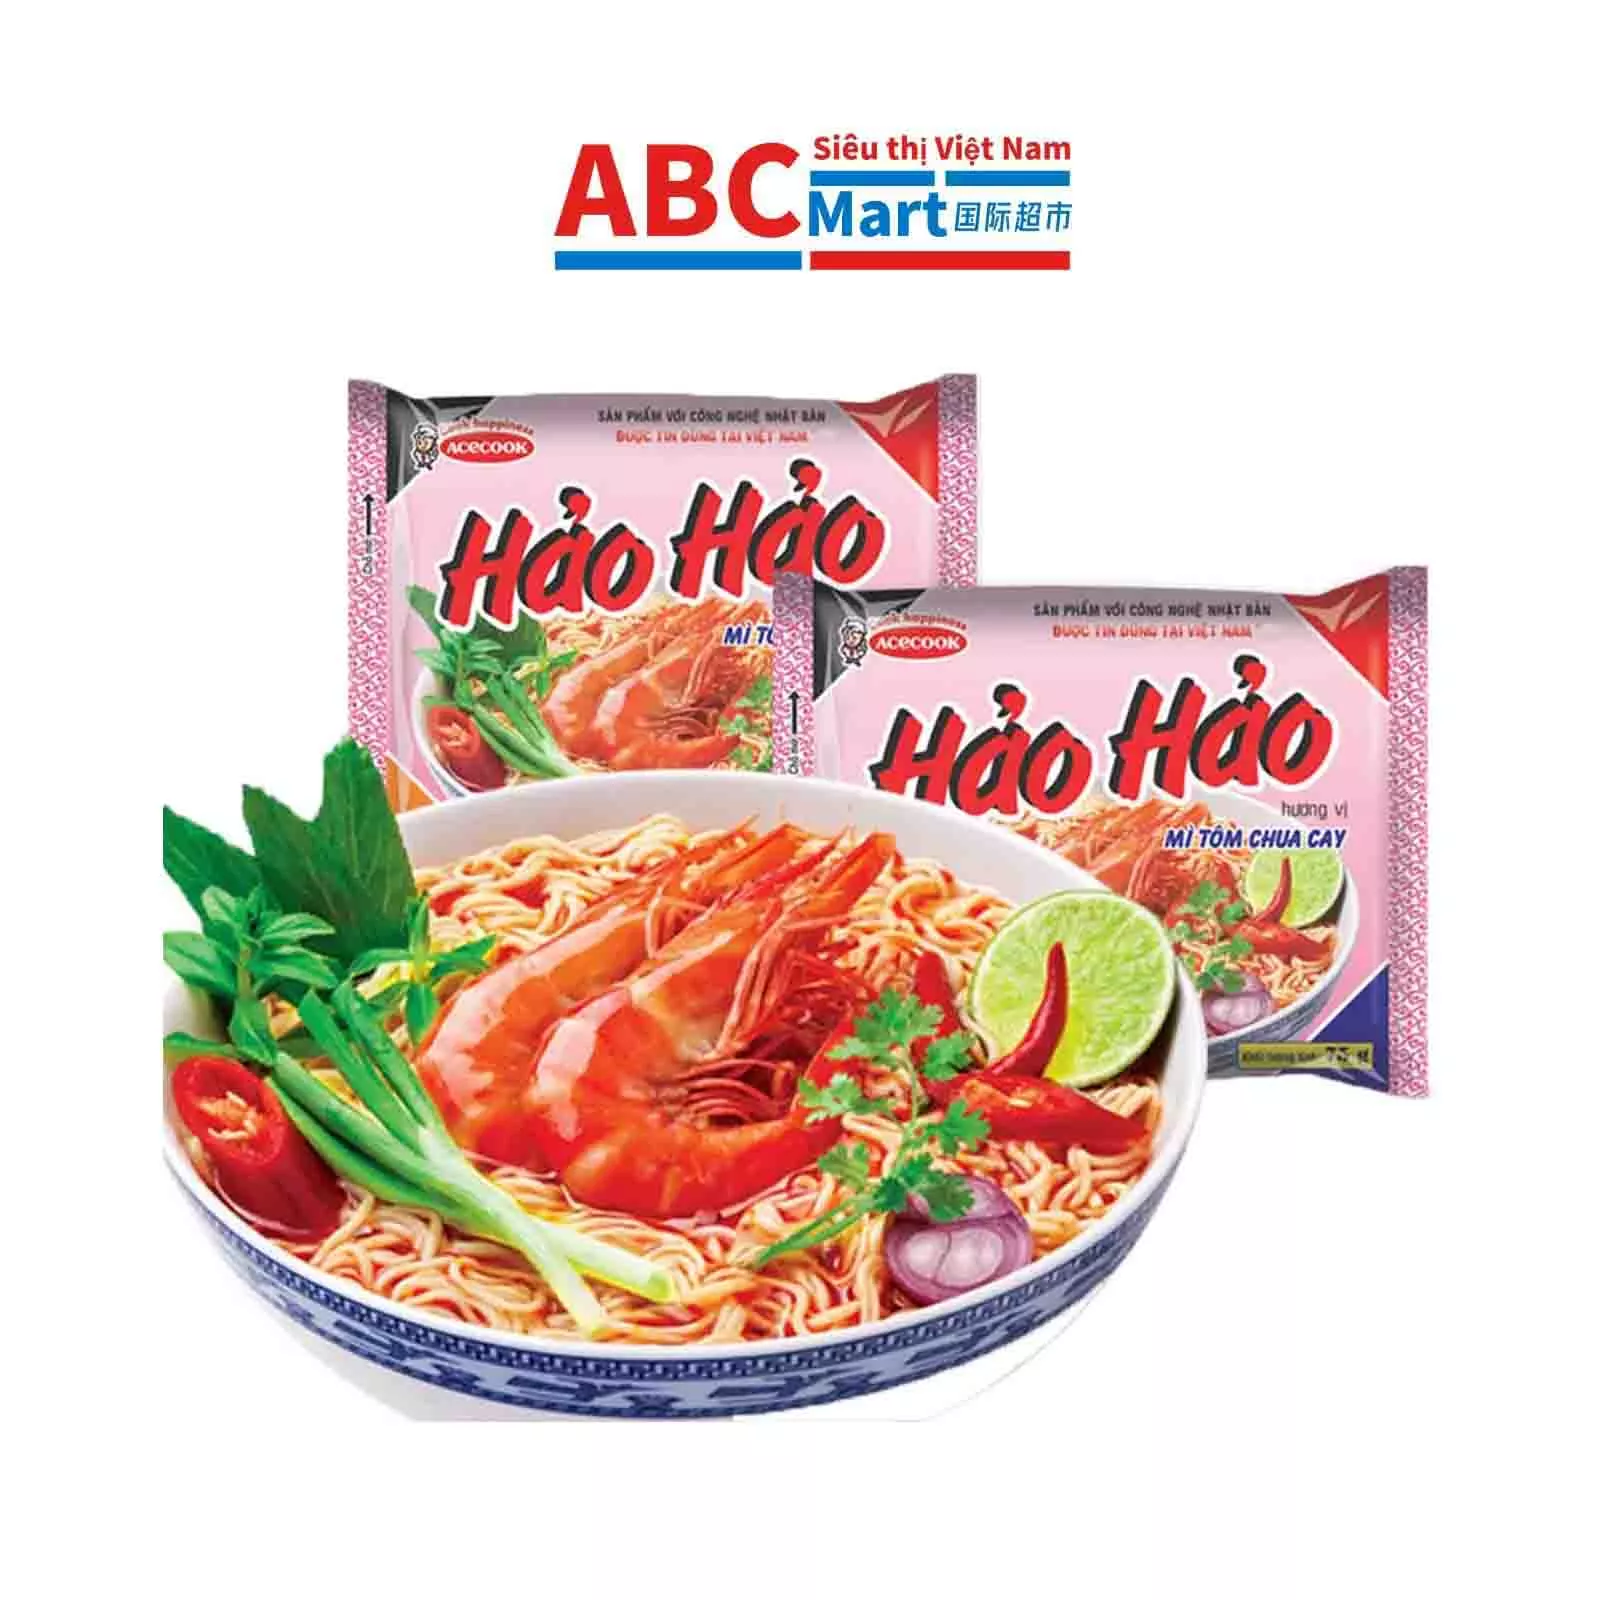 【Việt Nam-Hảo Hảo tôm chua cay gói 75g】好好酸辣虾 经典口味方便面-ABCMart 国际超市